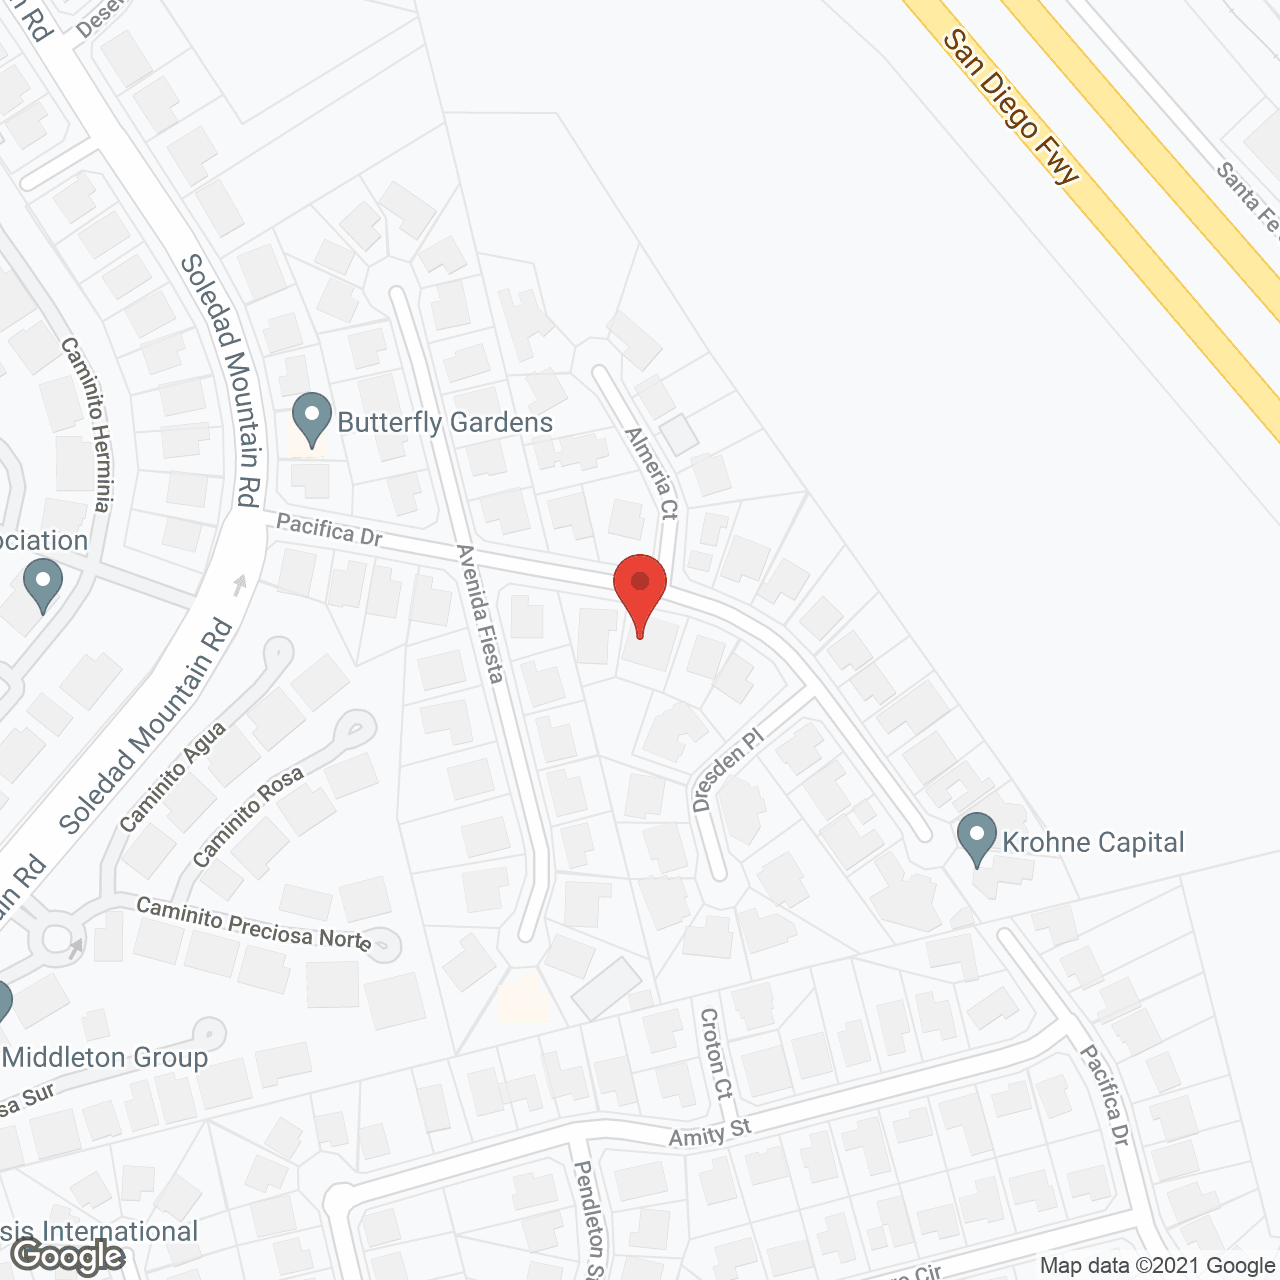 La Jolla Casa Pacifica in google map